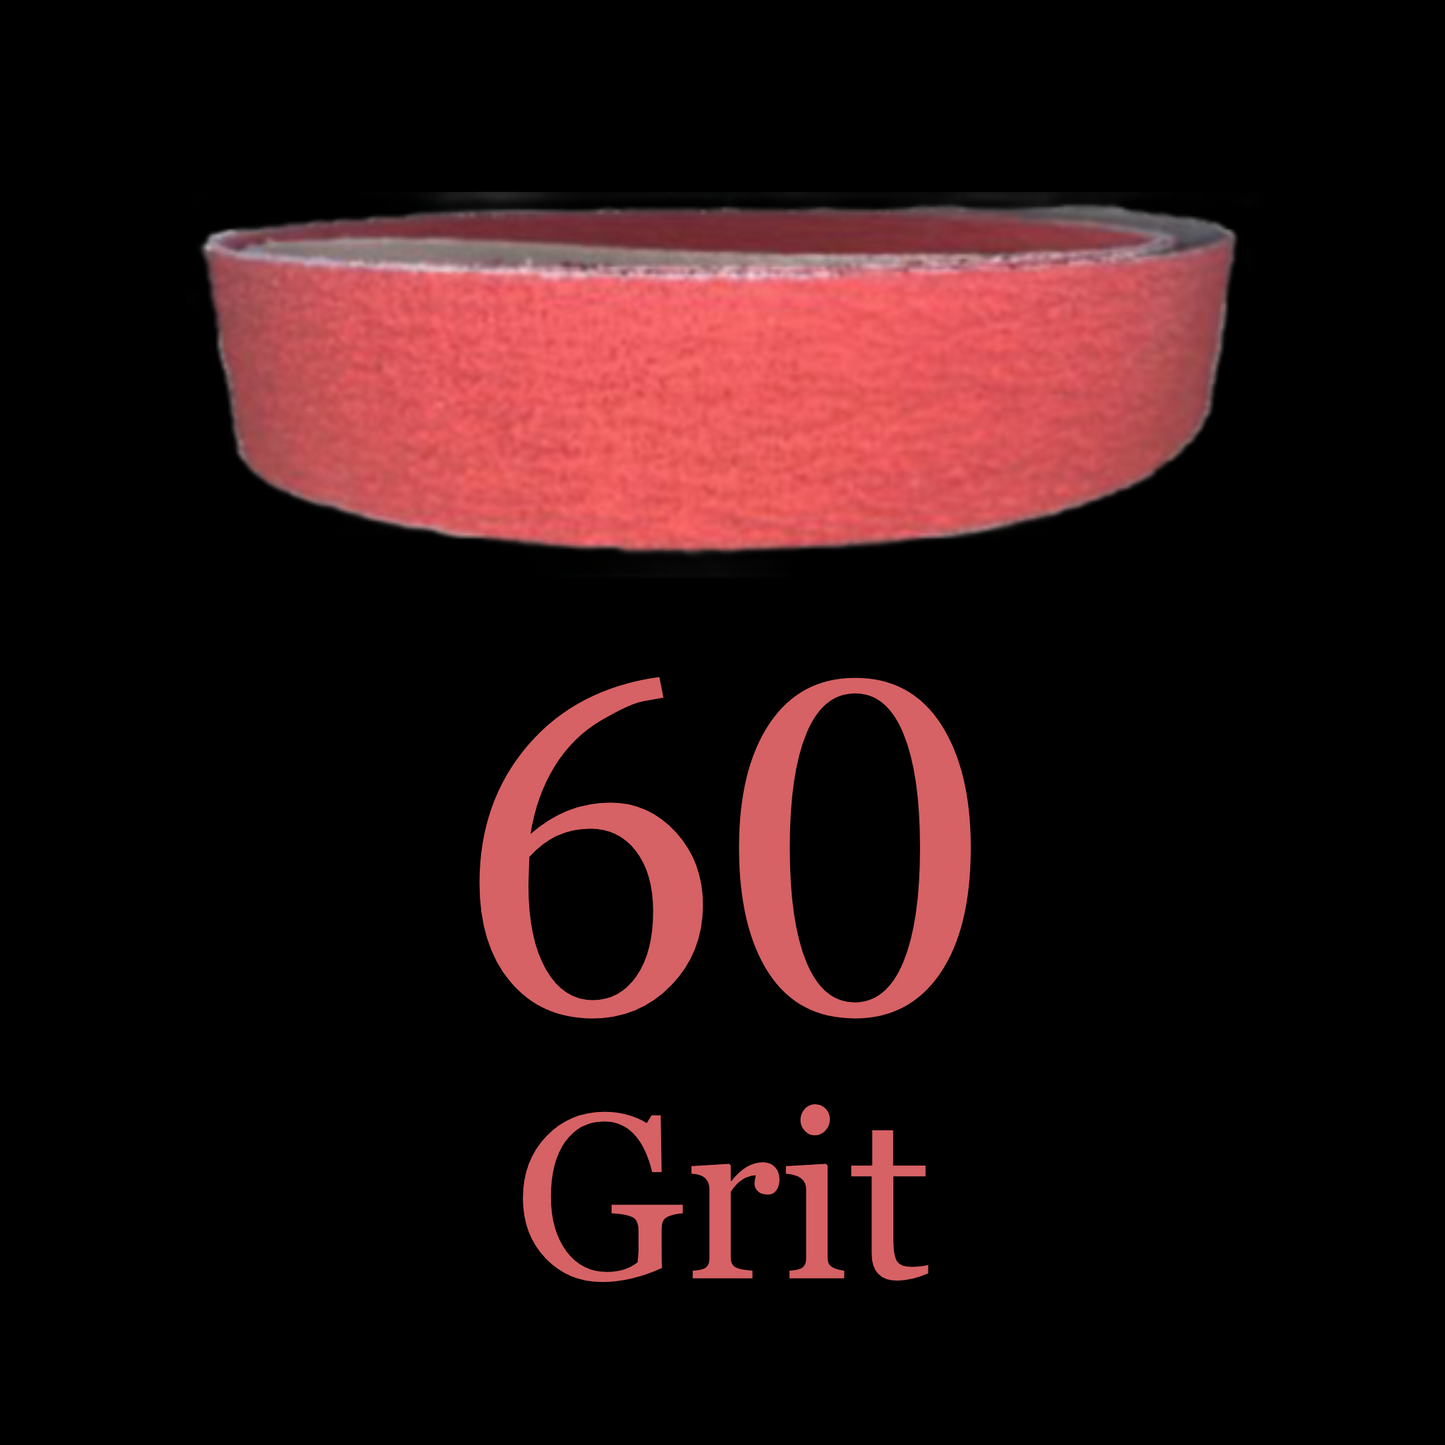 2” x 72” Red Ripper Phoenix Premium Ceramic Belts 60 Grit